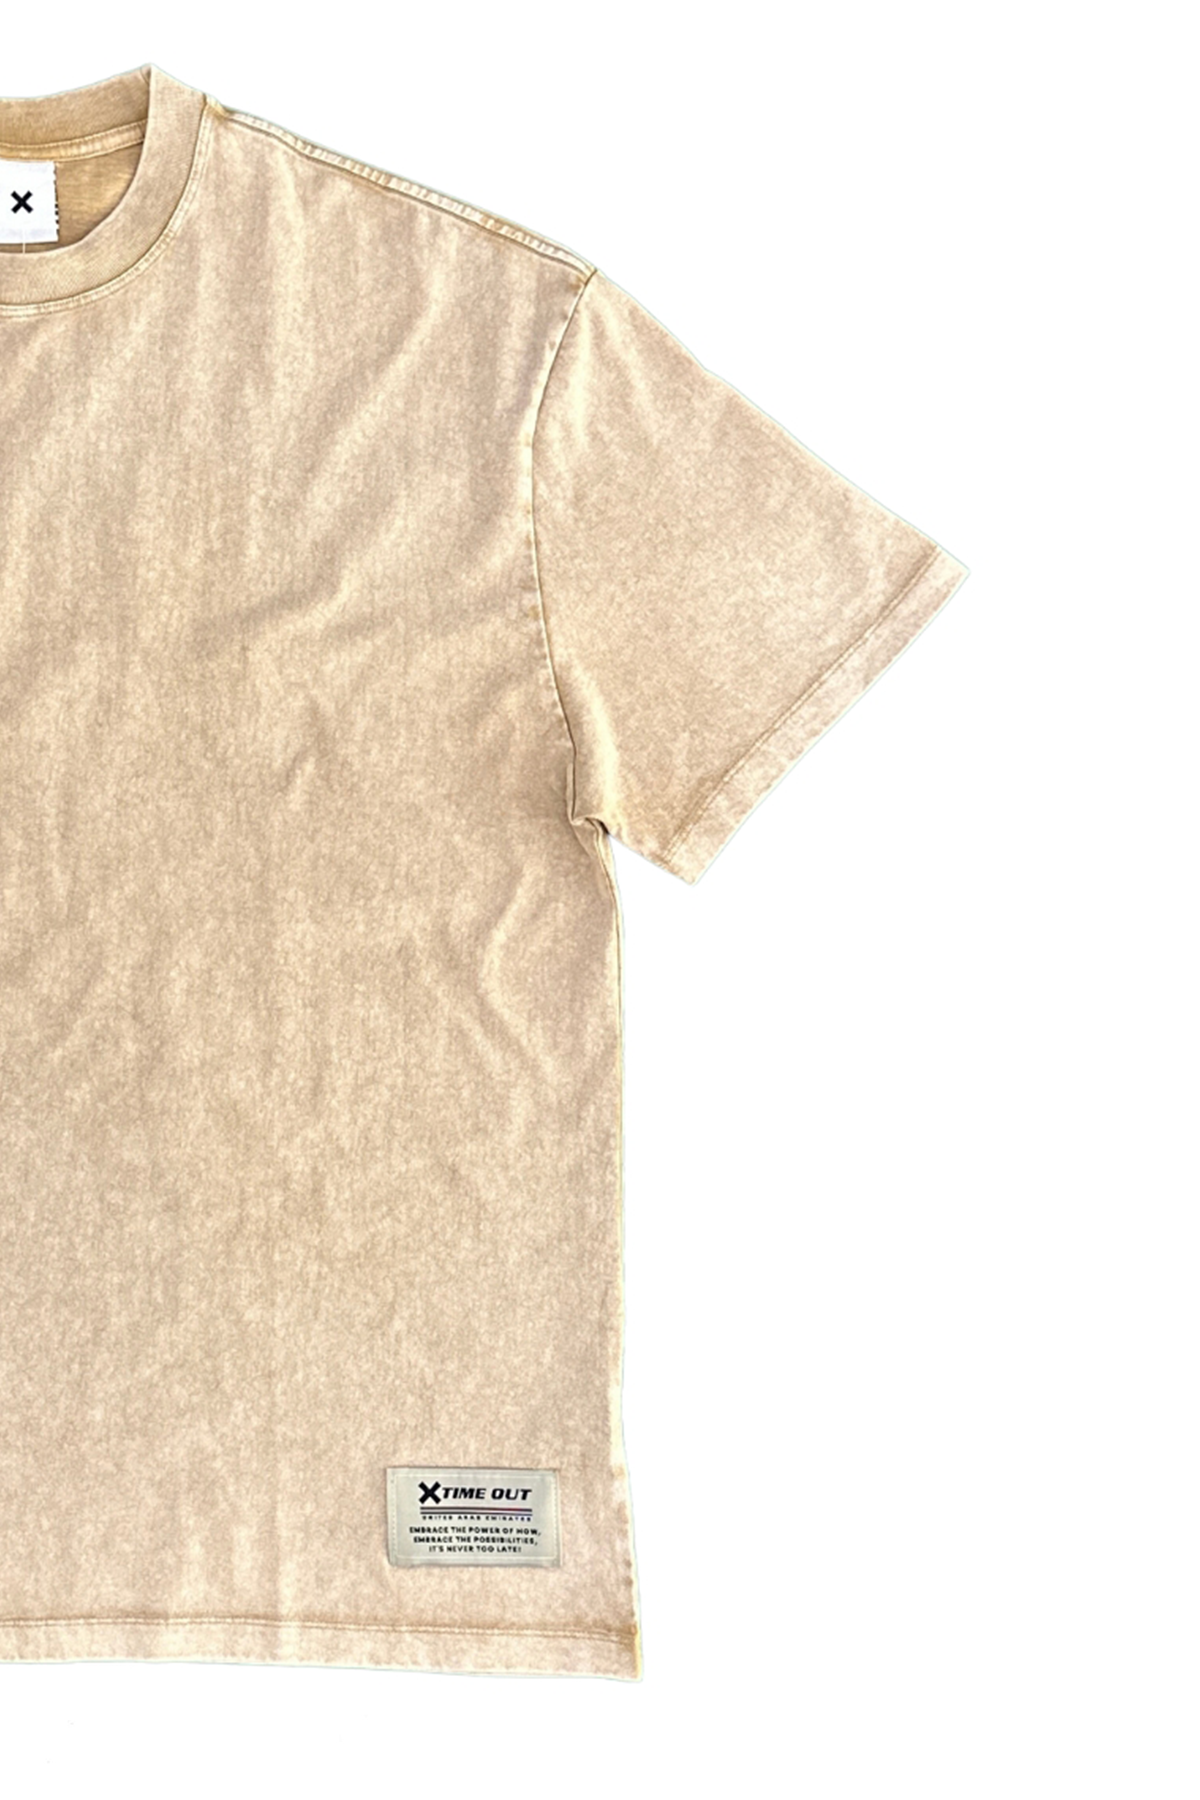 Stone-Wash-Oversized-Round-Neck-Khaki-T-shirt-Unisex